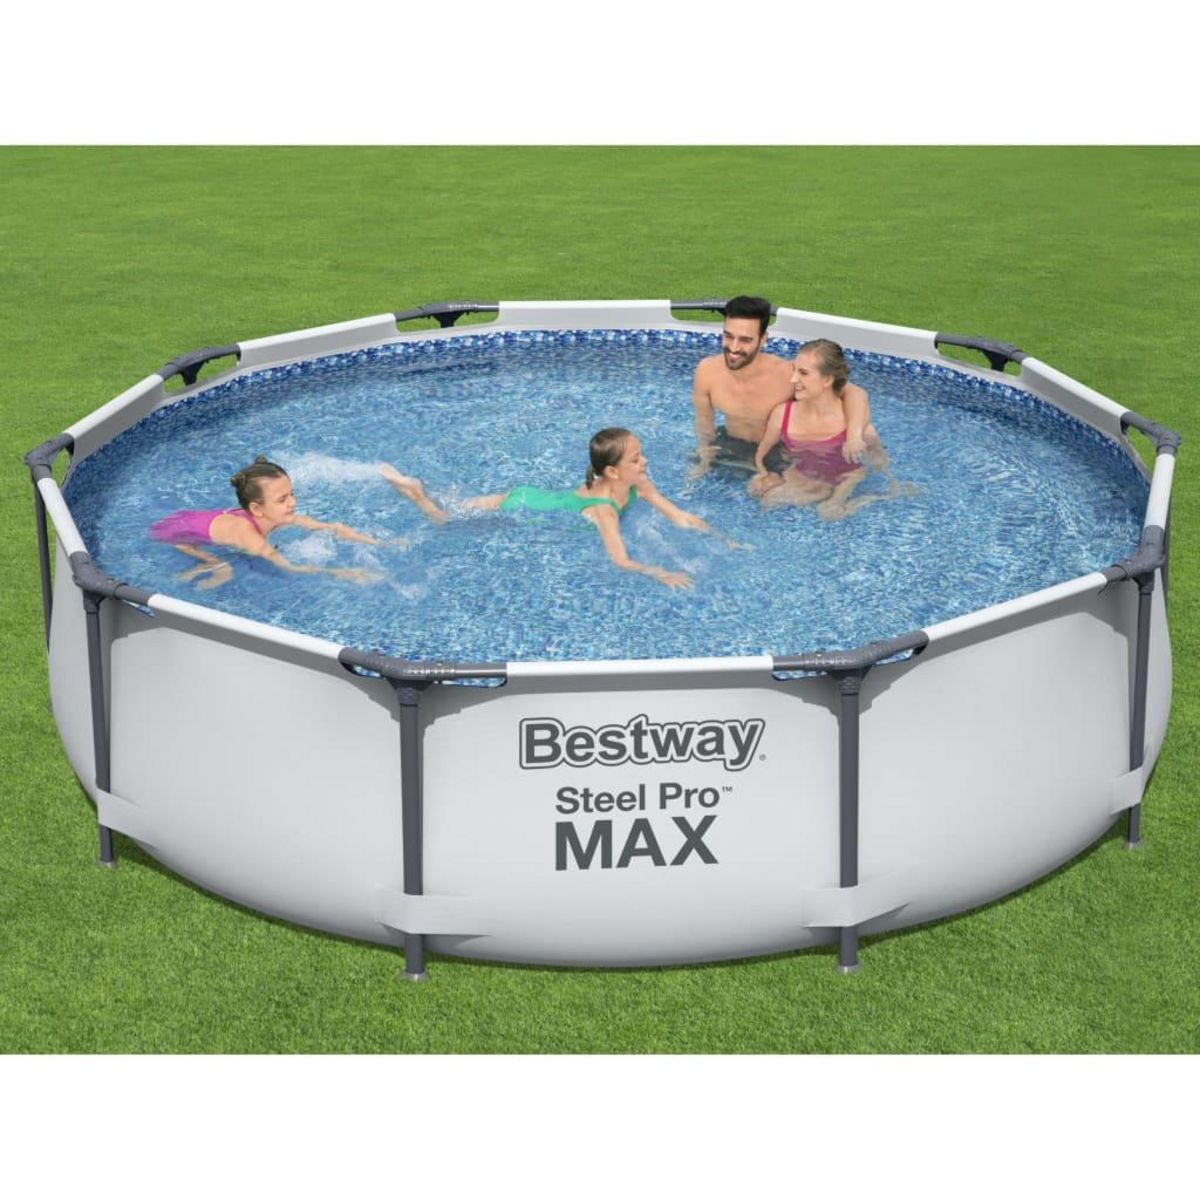 BESTWAY Bestway Ensemble de piscine Steel Pro MAX 305x76 cm